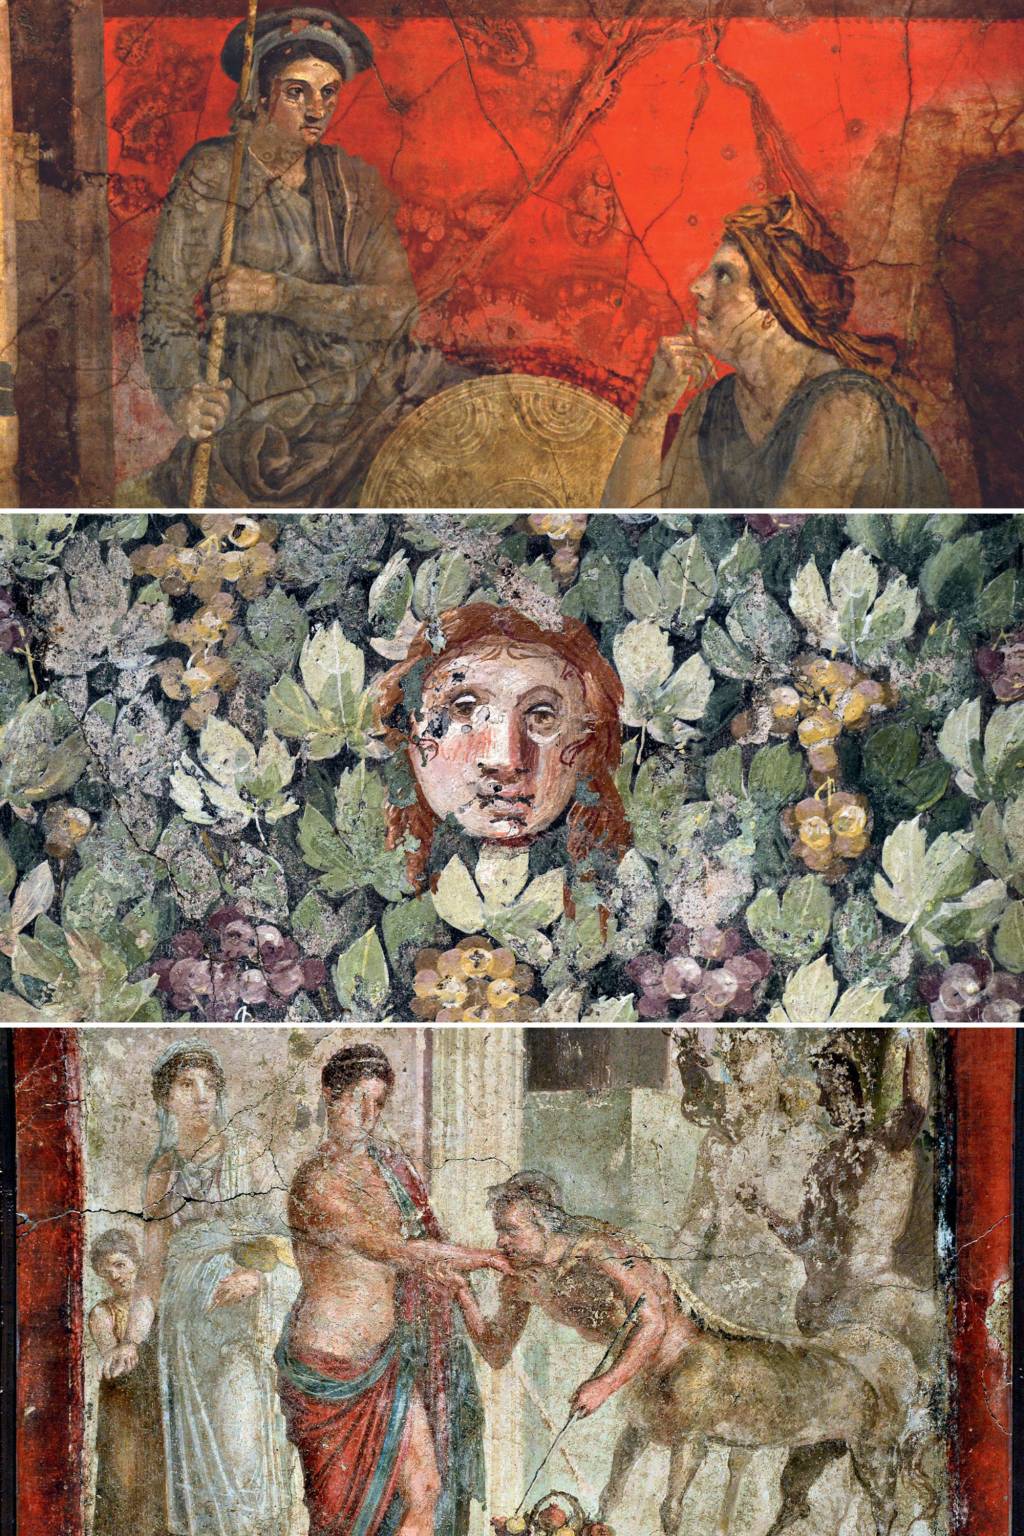 PASSADO EM CORES - O filósofo em atividade (acima), rosto de máscara tradicional em meio a videiras (meio) e figuras da mitologia: o milagre da conservação (abaixo) -